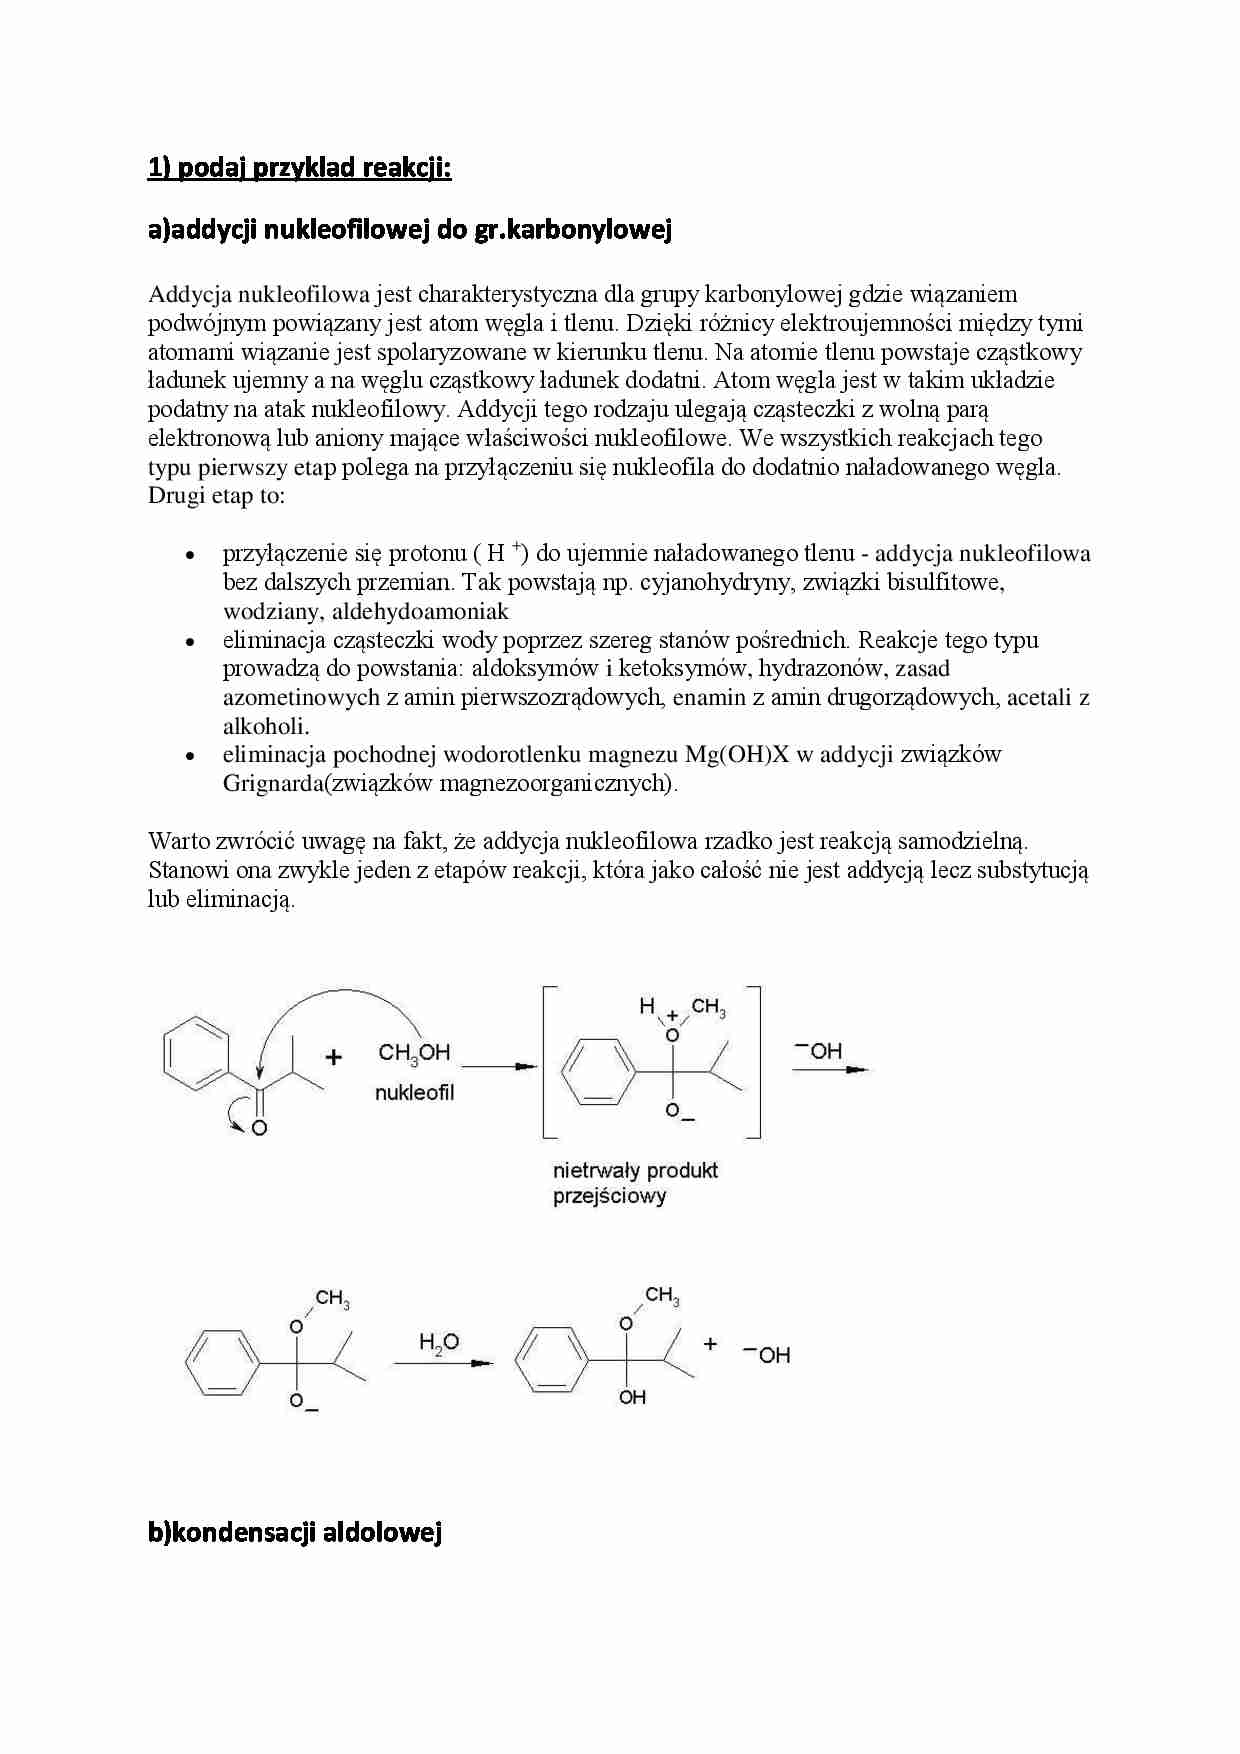 Podstawy chemii organicznej- pytania i odpowiedzi na egzamin - strona 1